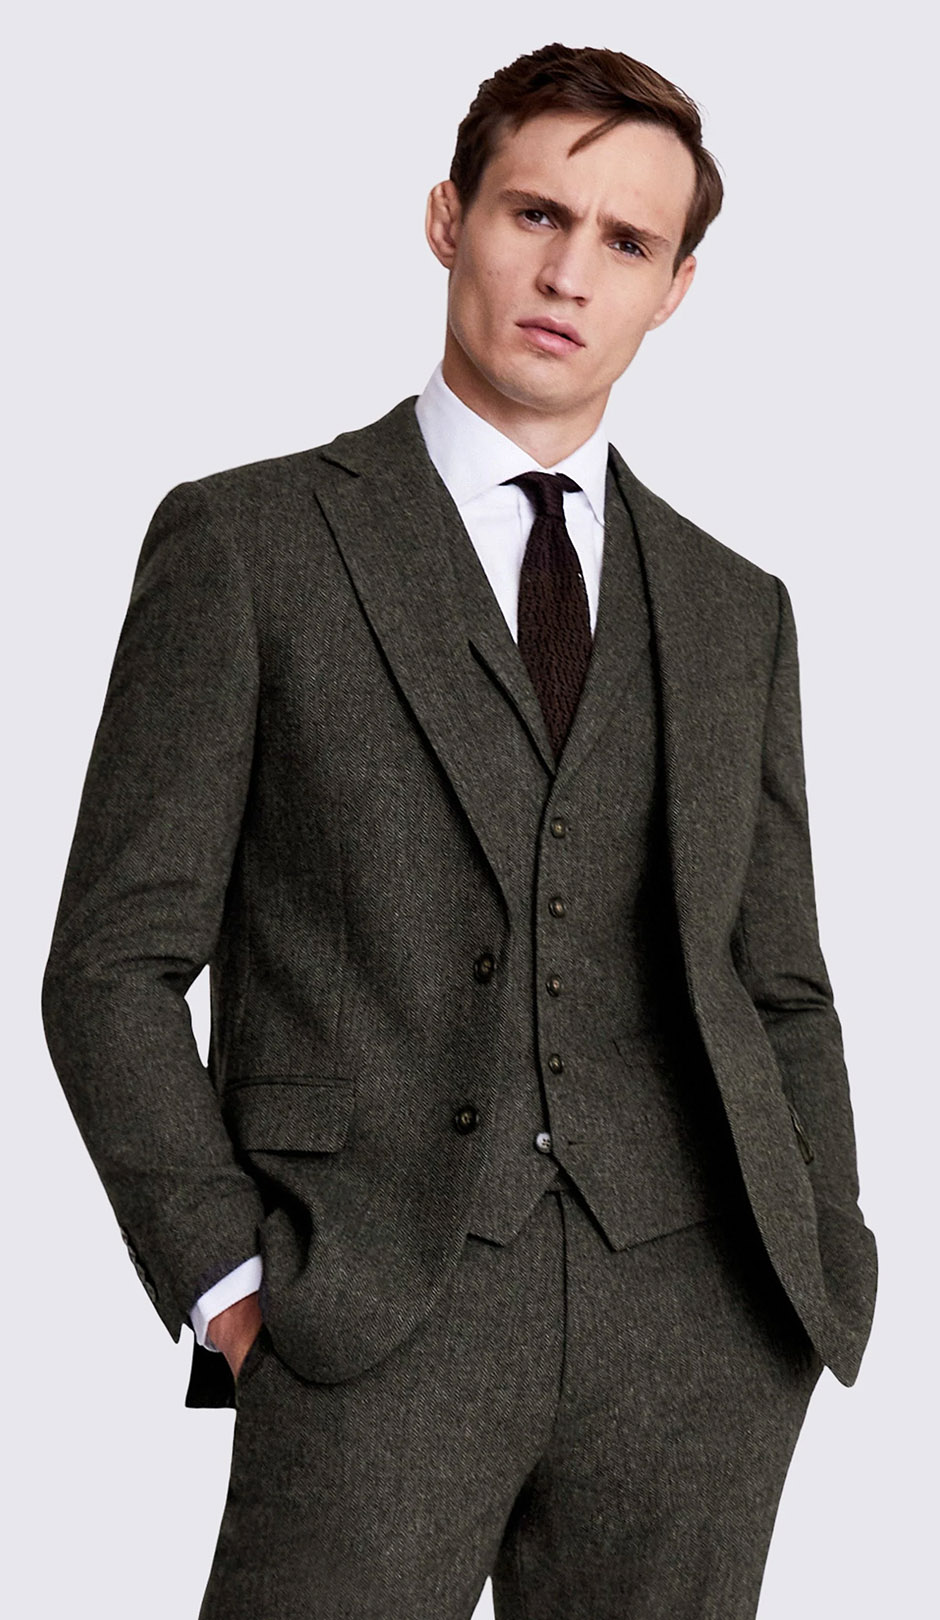 Tweed groom suit in earthy pine tone from Moss Bros